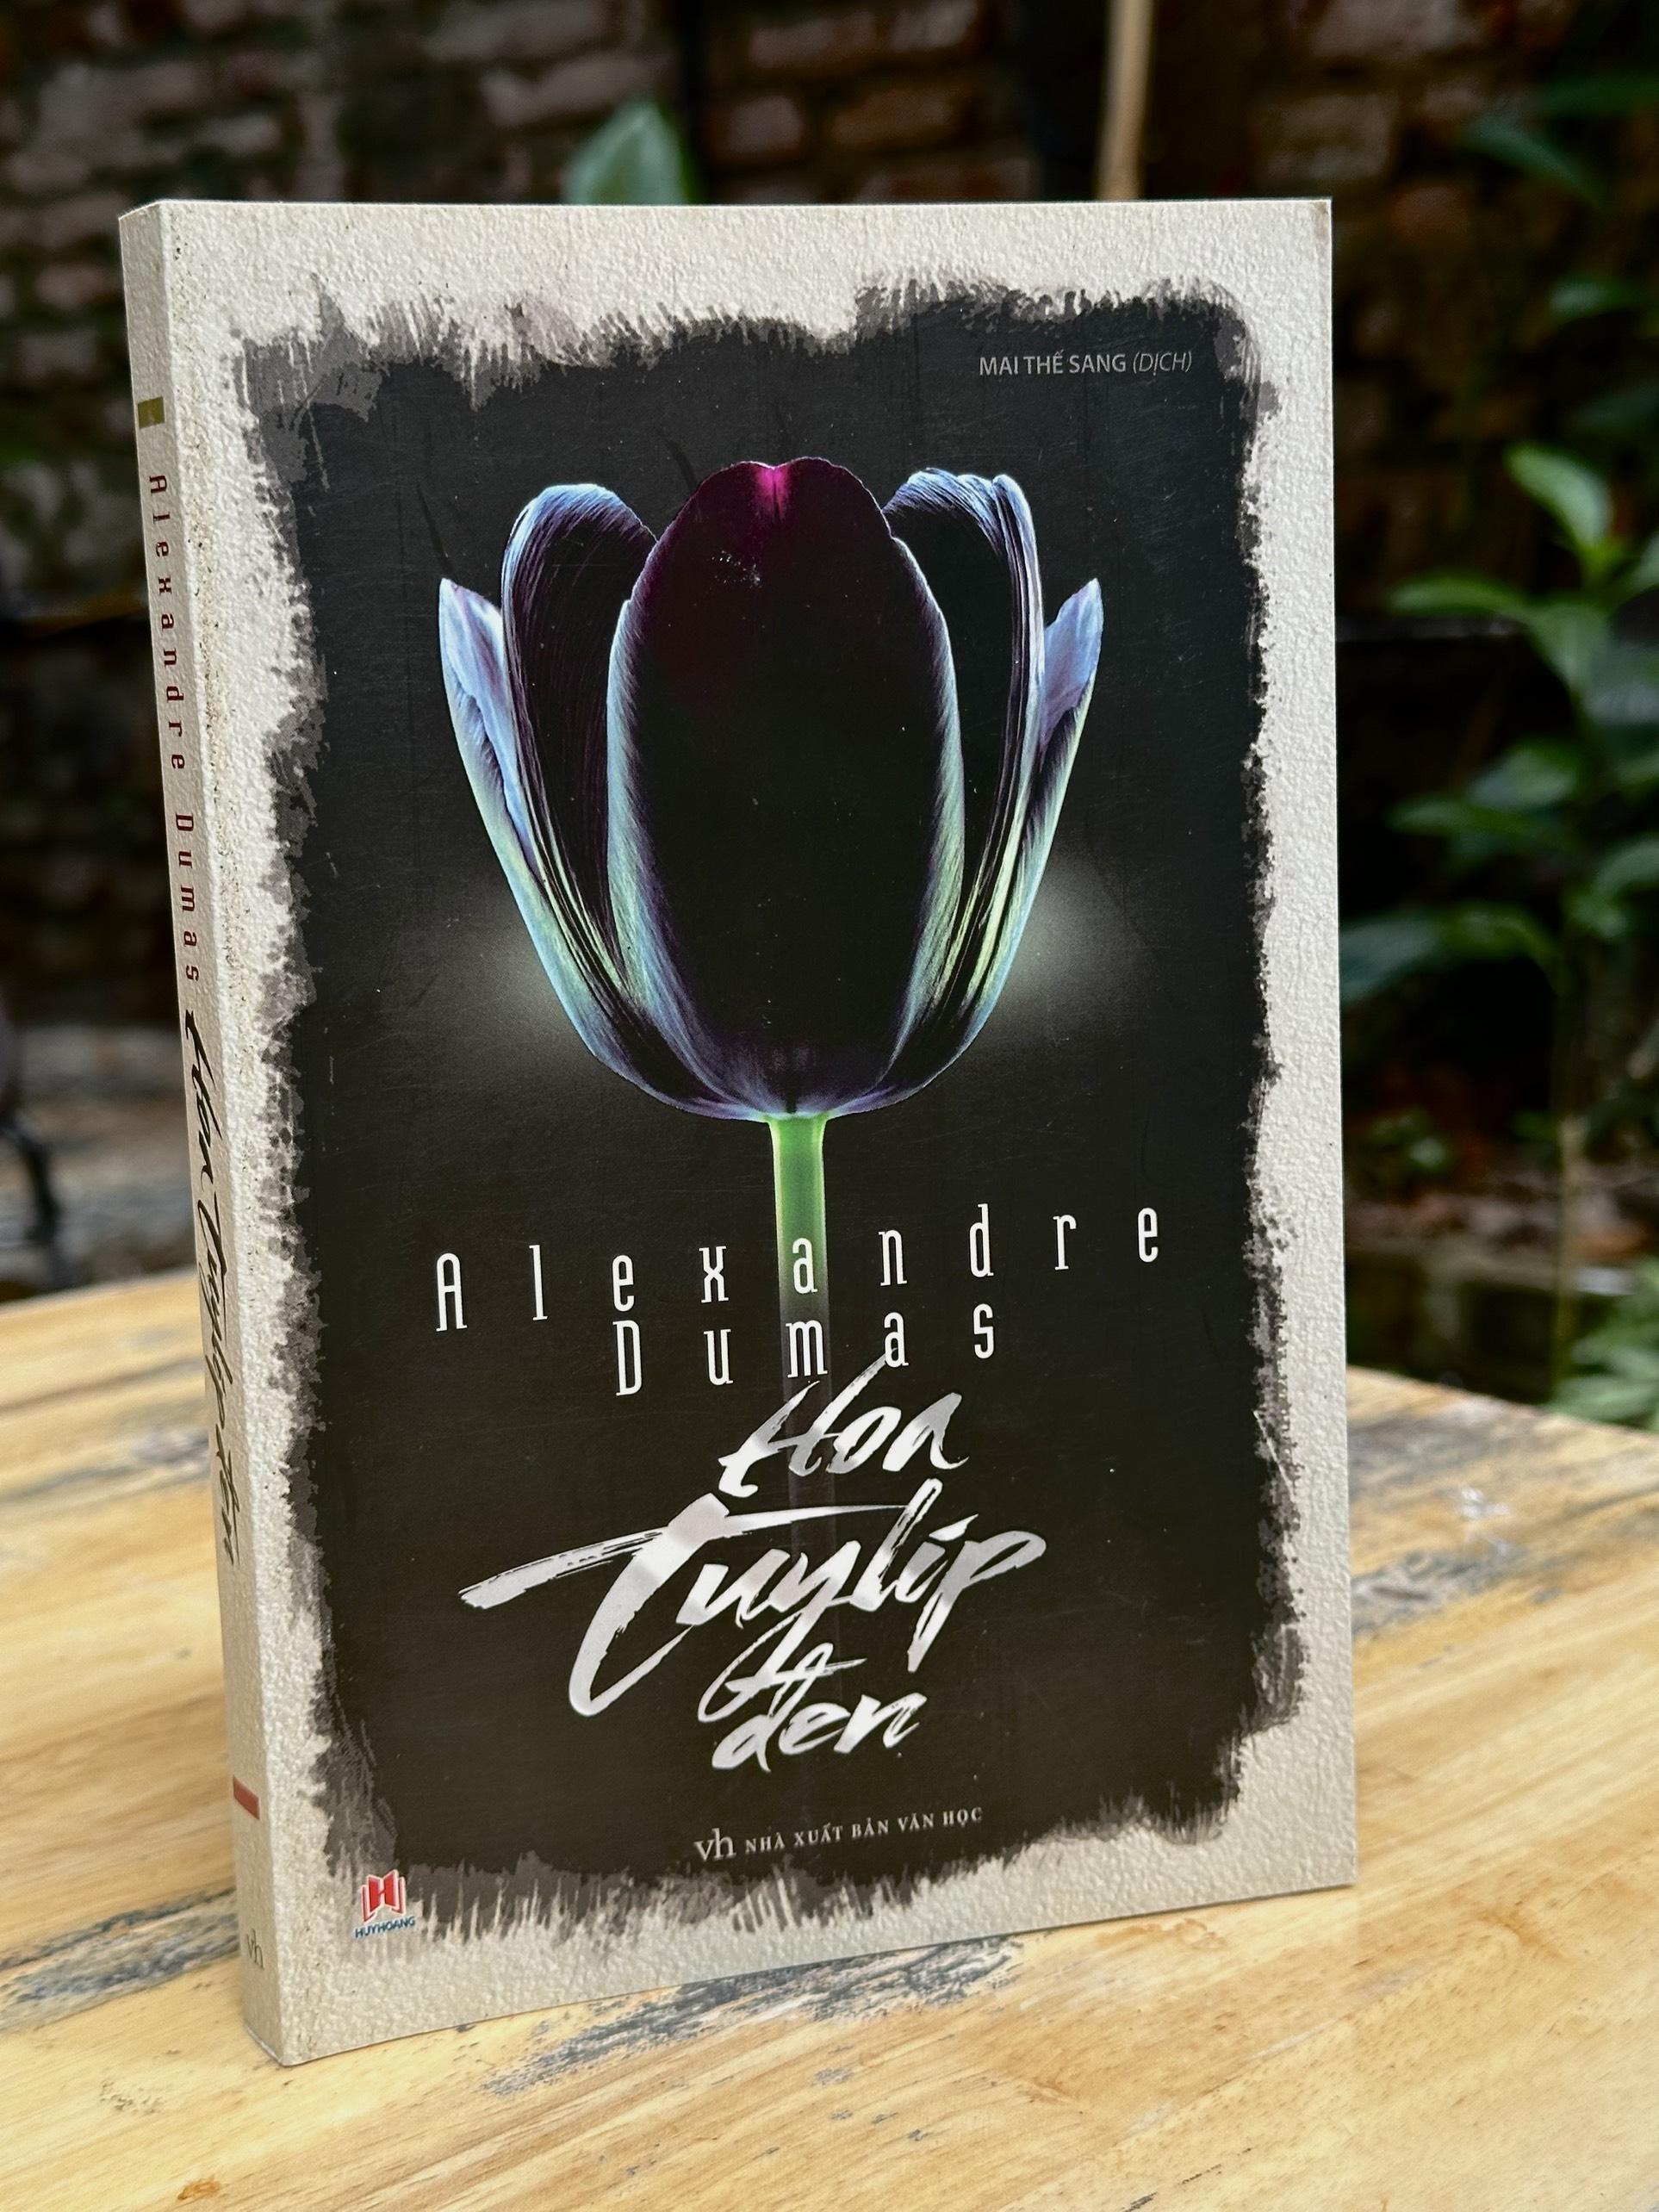 Sách - Hoa Tuylip đen - Sách Văn Học - Tiểu Thuyết Tình Yêu- 2H Books